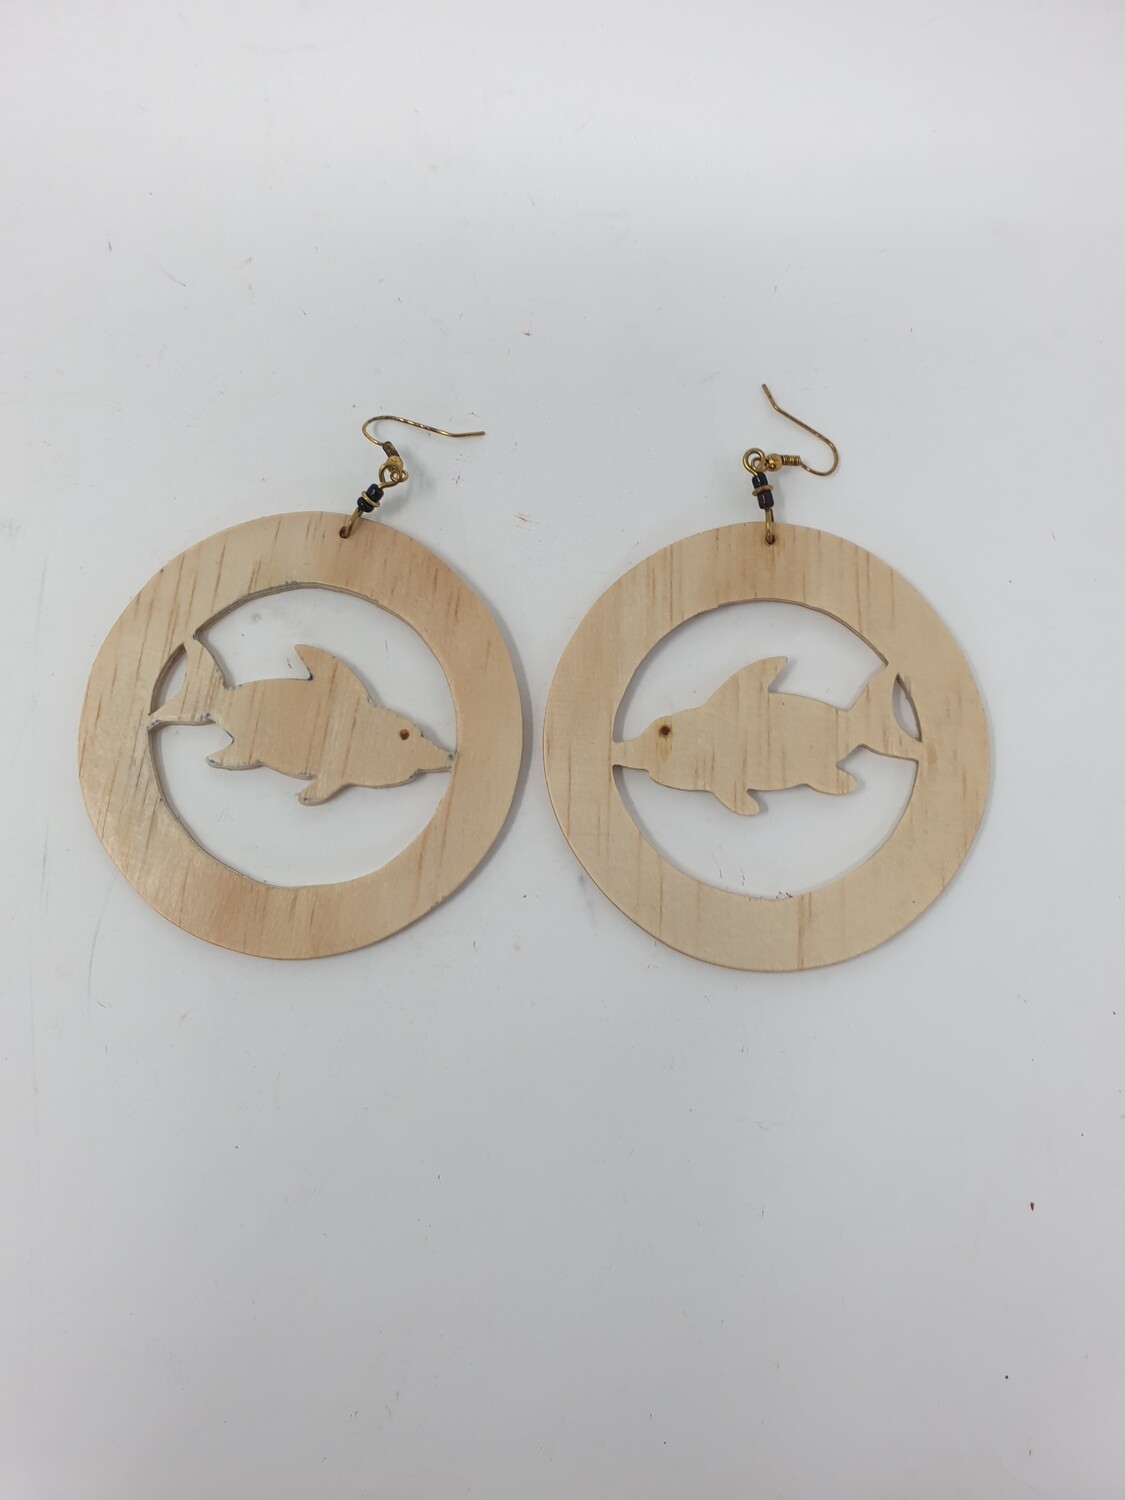 Samaki Styled Wooden Earrings